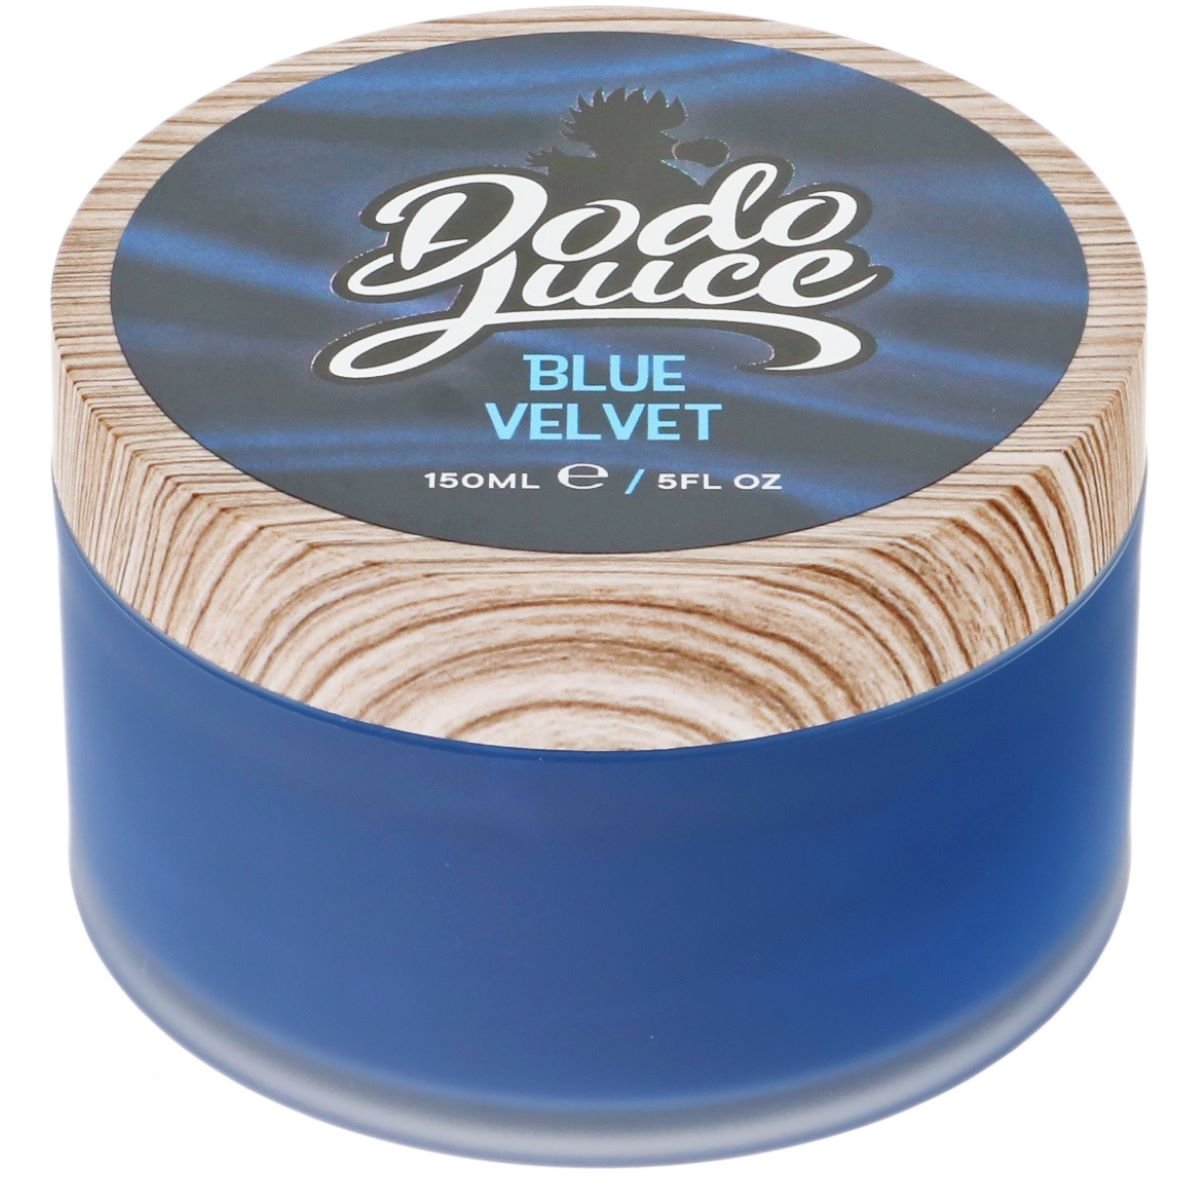 Blue Velvet hard wax for dark coloured cars  - 150ml